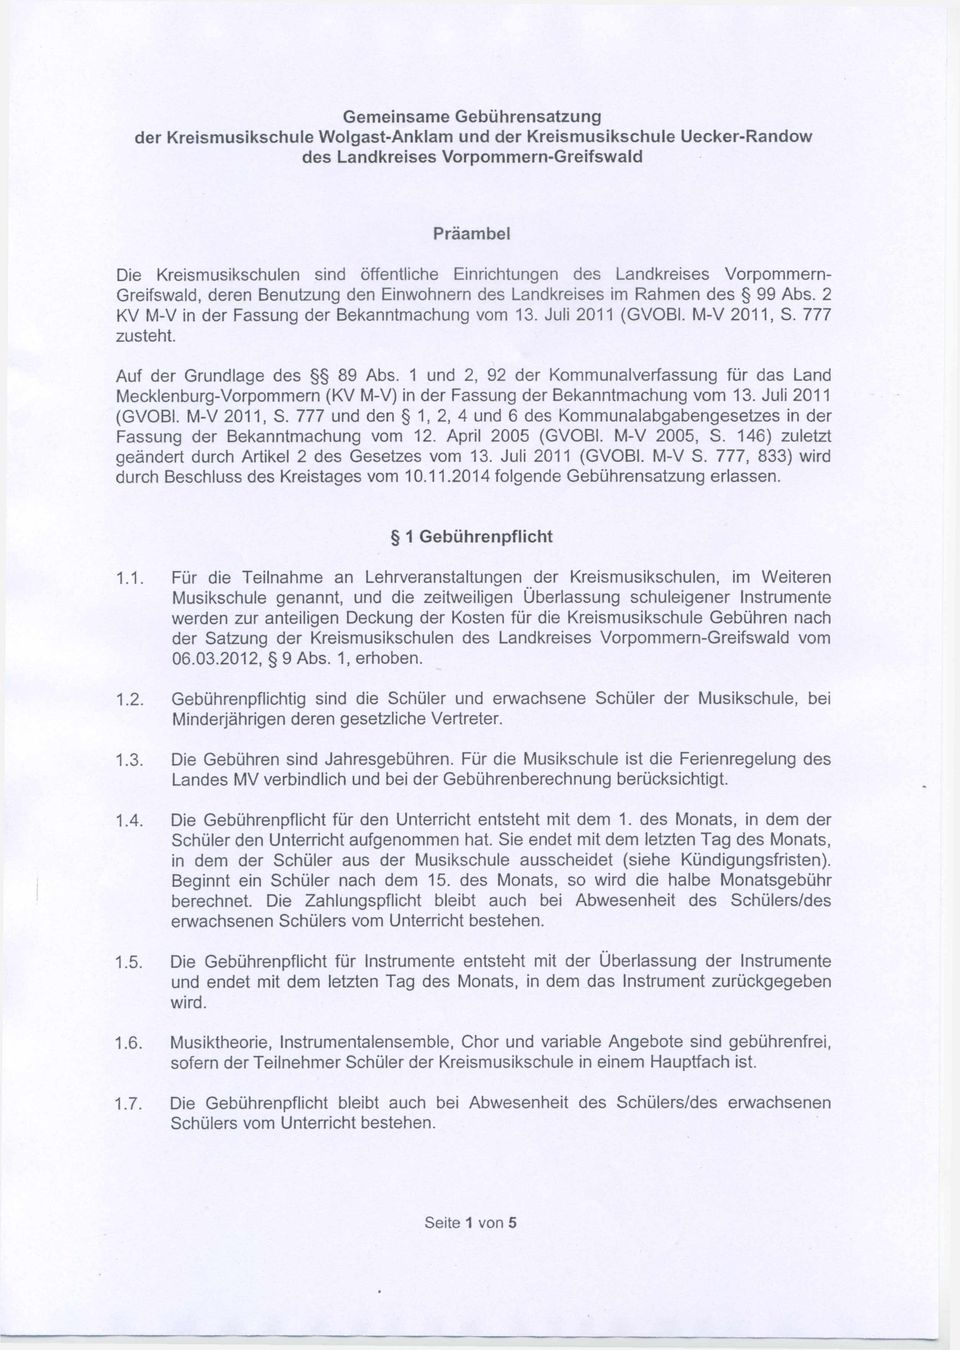 M-V 2011, S. 777 zusteht. Auf der Grundlage des 89 Abs. 1 und 2, 92 der Kommunalverfassung für das Land Mecklenburg-Vorpommern (KV M-V) in der Fassung der Bekanntmachung vom 13. Juli 2011 (GVOBI.